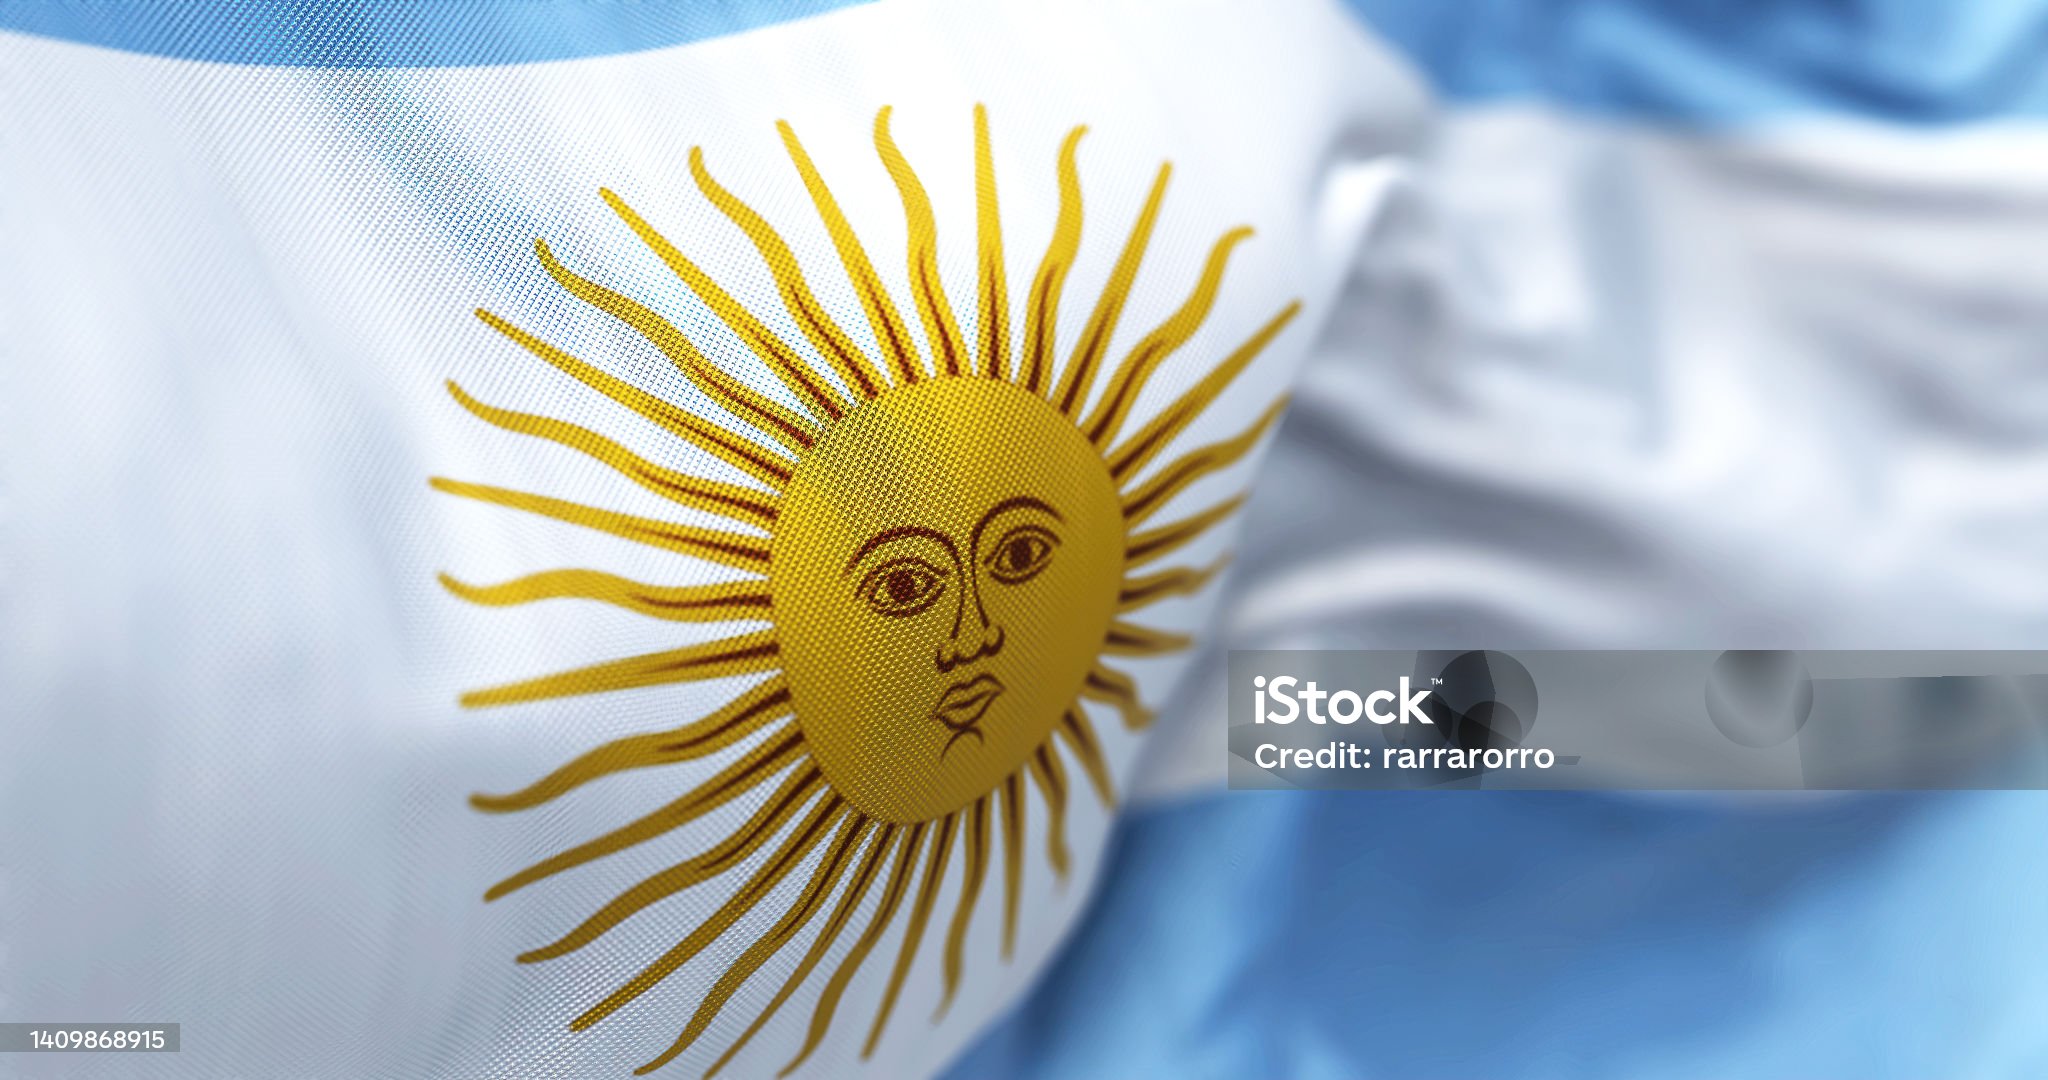 O Fundo Monetário Internacional FMI chama a recuperação econômica da Argentina de impressionante